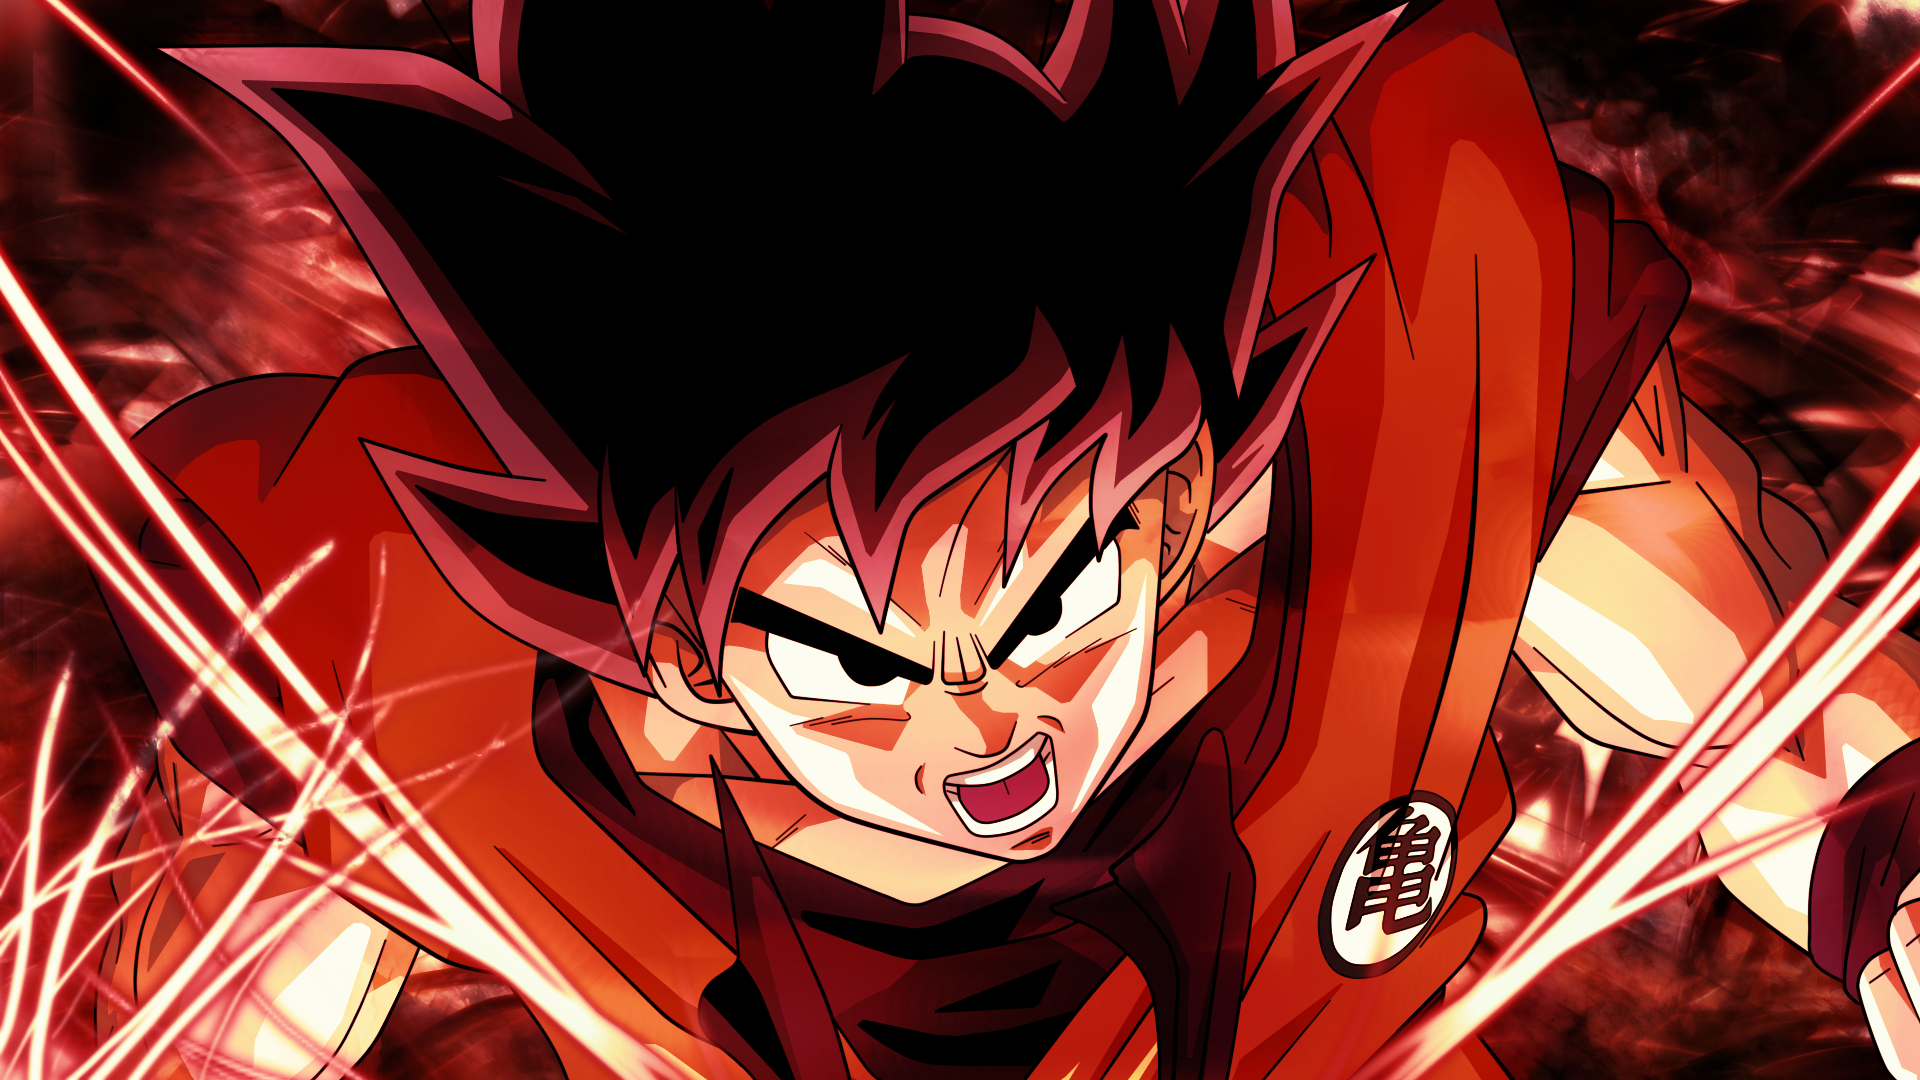 Son Goku Wallpapers  Top 20 Best Son Goku Wallpapers Download